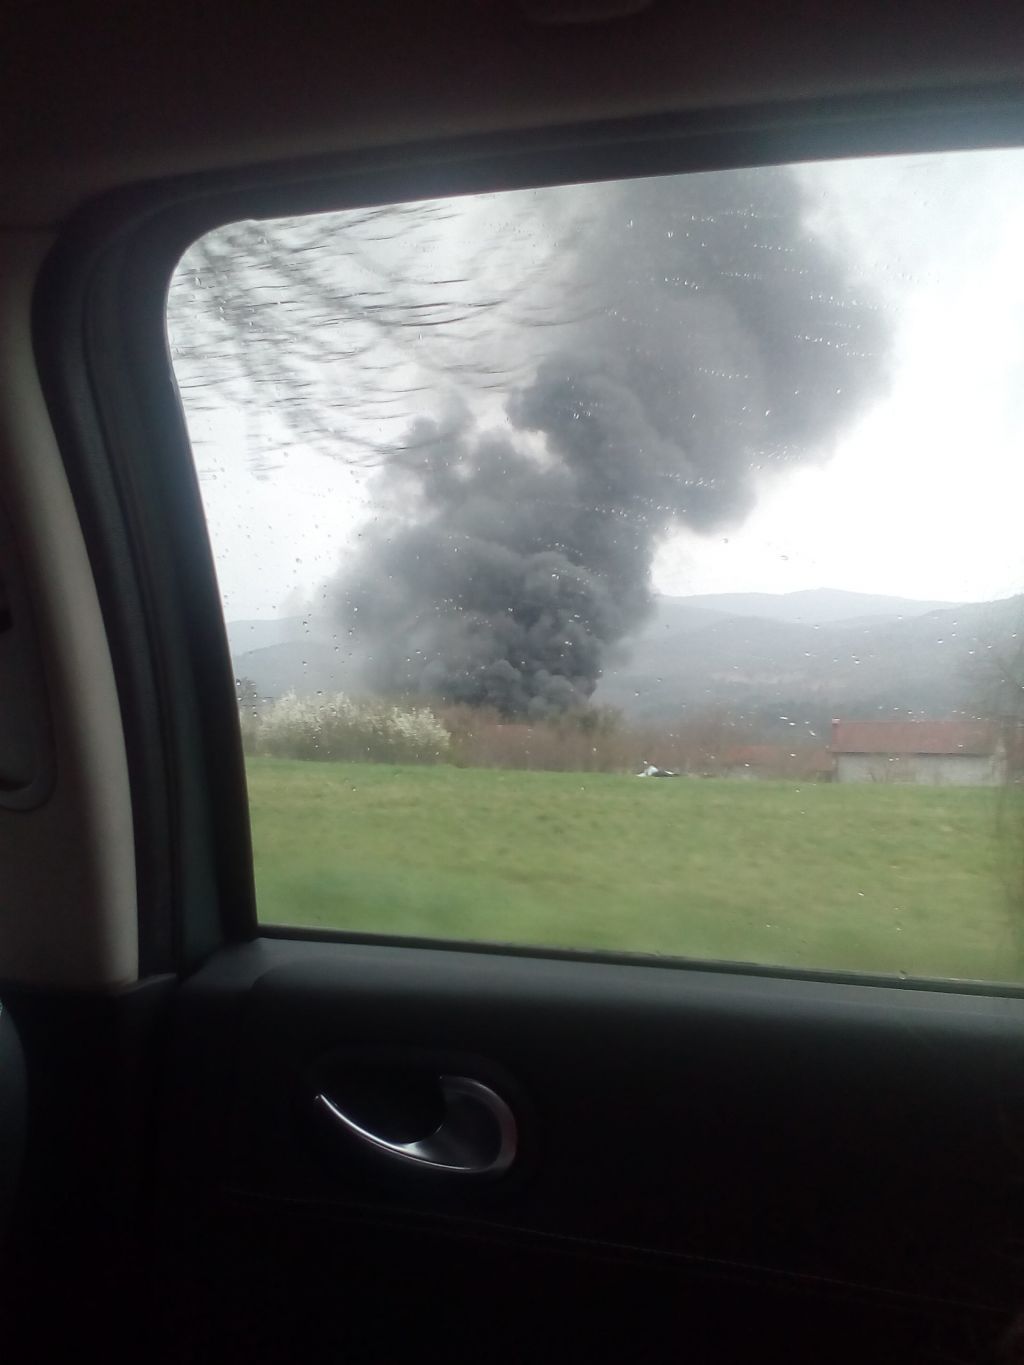 FOTO: Gost dim iznad tovarne: so res videli moškega, ki podtika ogenj?